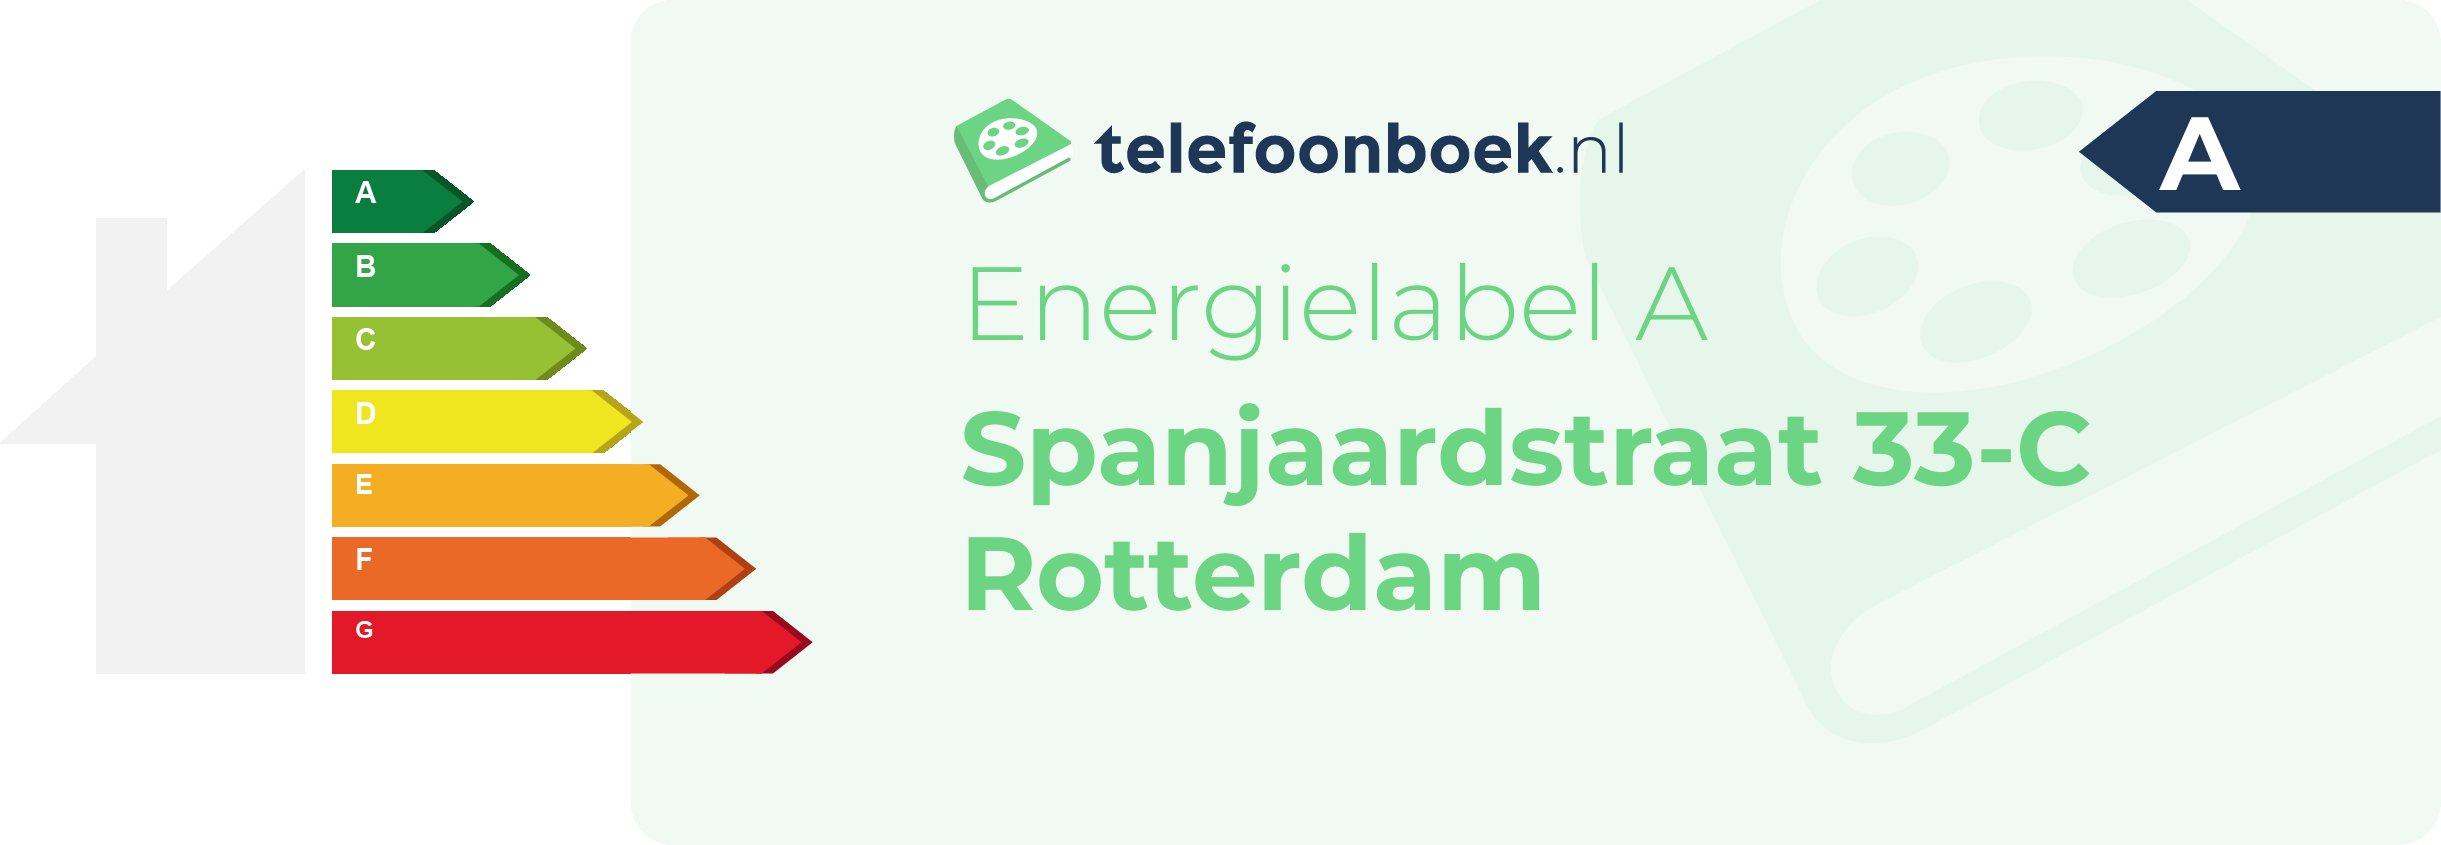 Energielabel Spanjaardstraat 33-C Rotterdam